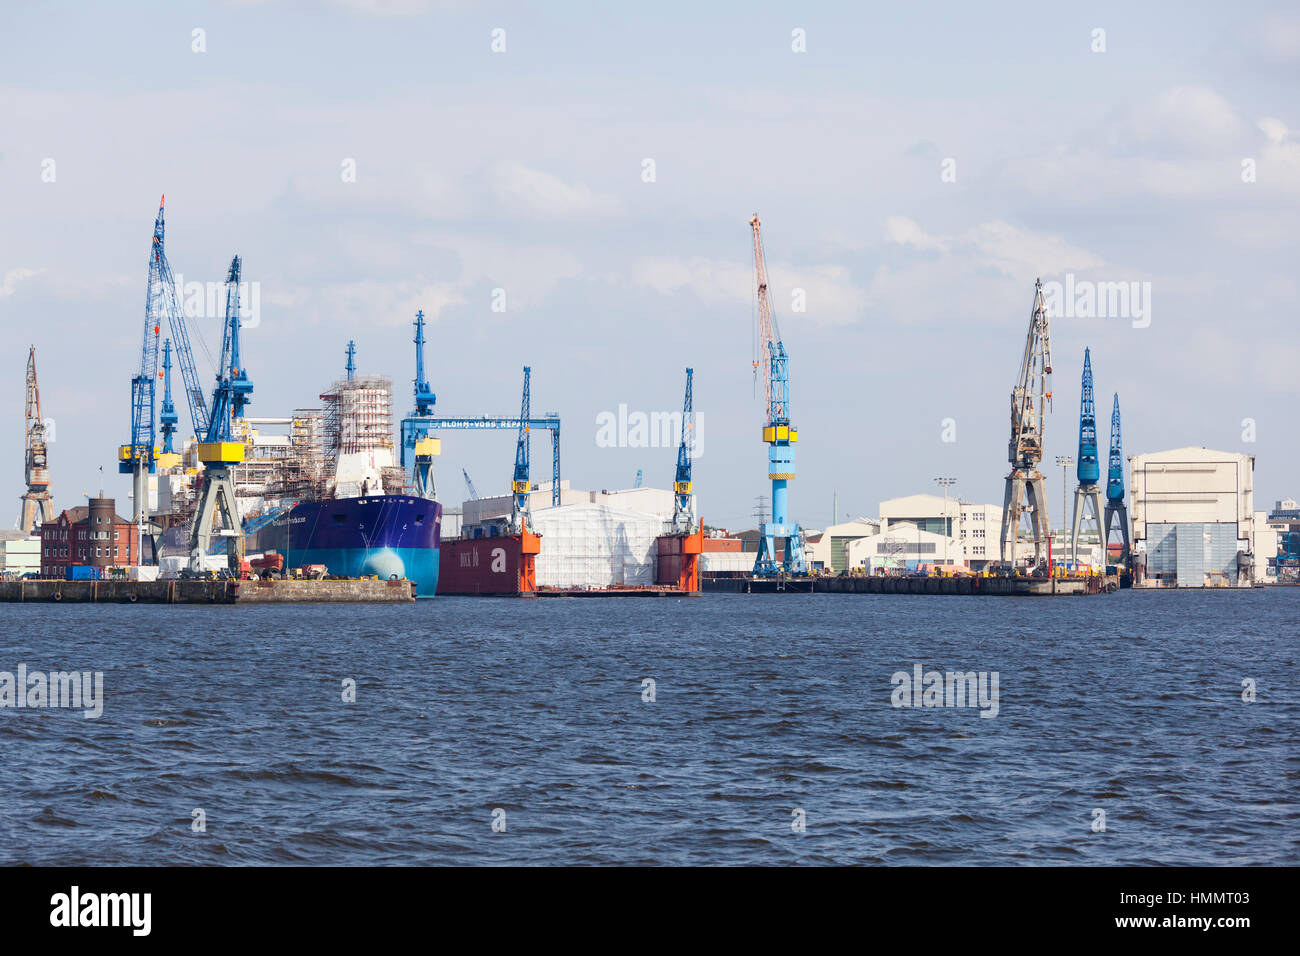 Hamburg, Deutschland - 5 Juli: Blohm und Voss Werft in Hamburg, Deutschland am 5. Juli 2013 Stockfoto